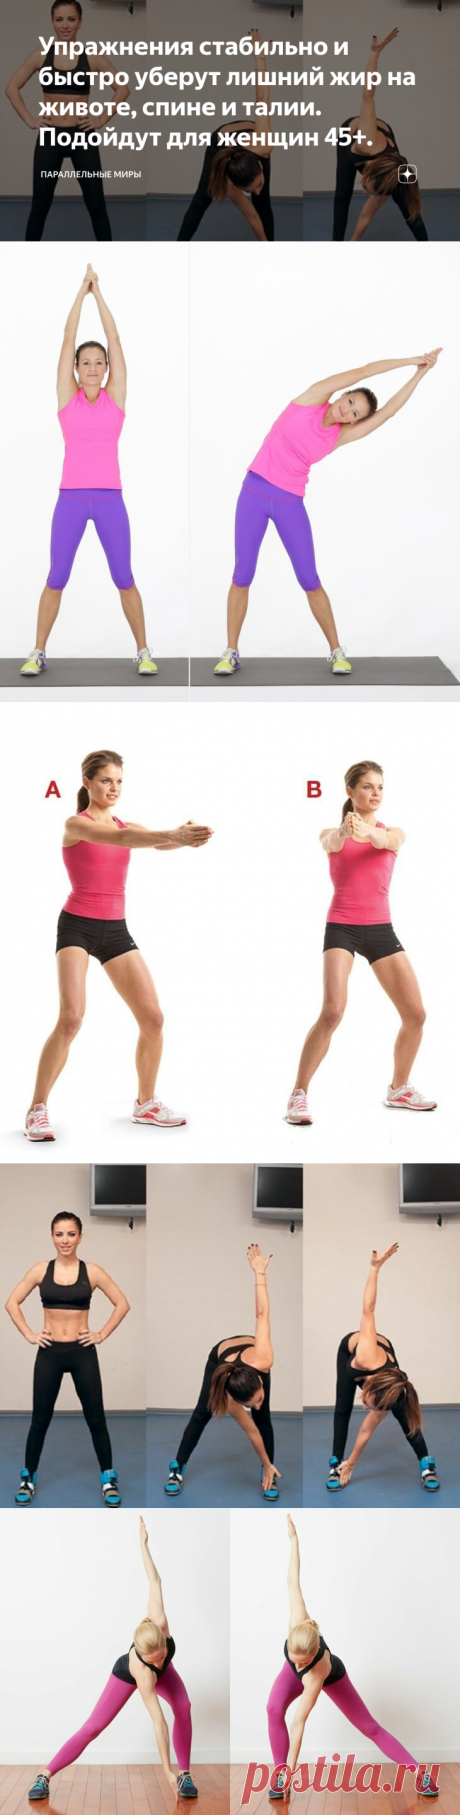 Упражнения стабильно и быстро уберут лишний жир на животе, спине и талии. Подойдут для женщин 45+.  Не секрет, что живот является самой проблемной зоной для похудения. Упражнения помогут улучшить тонус мышц живота, сделают талию более изящной и подтянутой. 1. Встать прямо, руки вдоль тела. Слегка наклониться вперед, ноги в коленях не сгибать. Приподнять левую ногу и дотронуться пальцами до стопы правой ноги, вернуться в и.п. Повторить с другой стороны. 2. Лечь на бок, голову на вытянутой руке.…